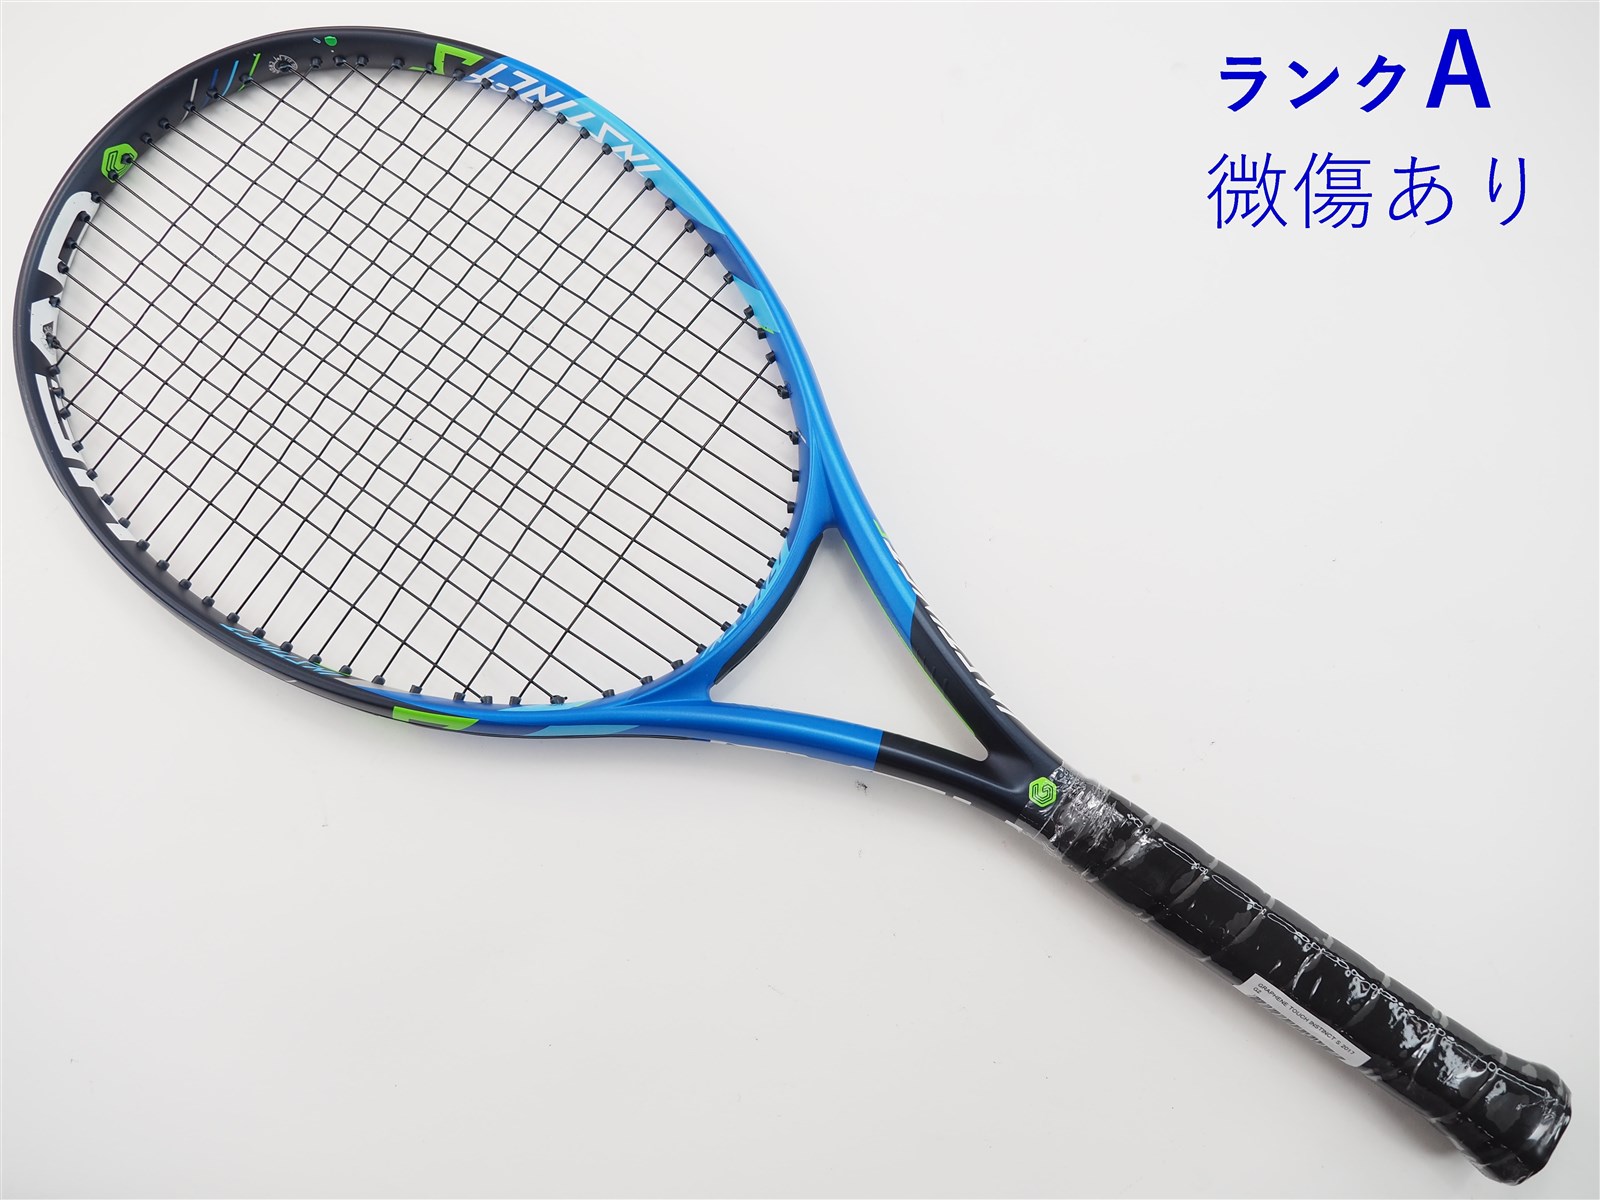 285g【新品ガット張上】硬式テニスラケット ヘッド グラフィンタッチ 